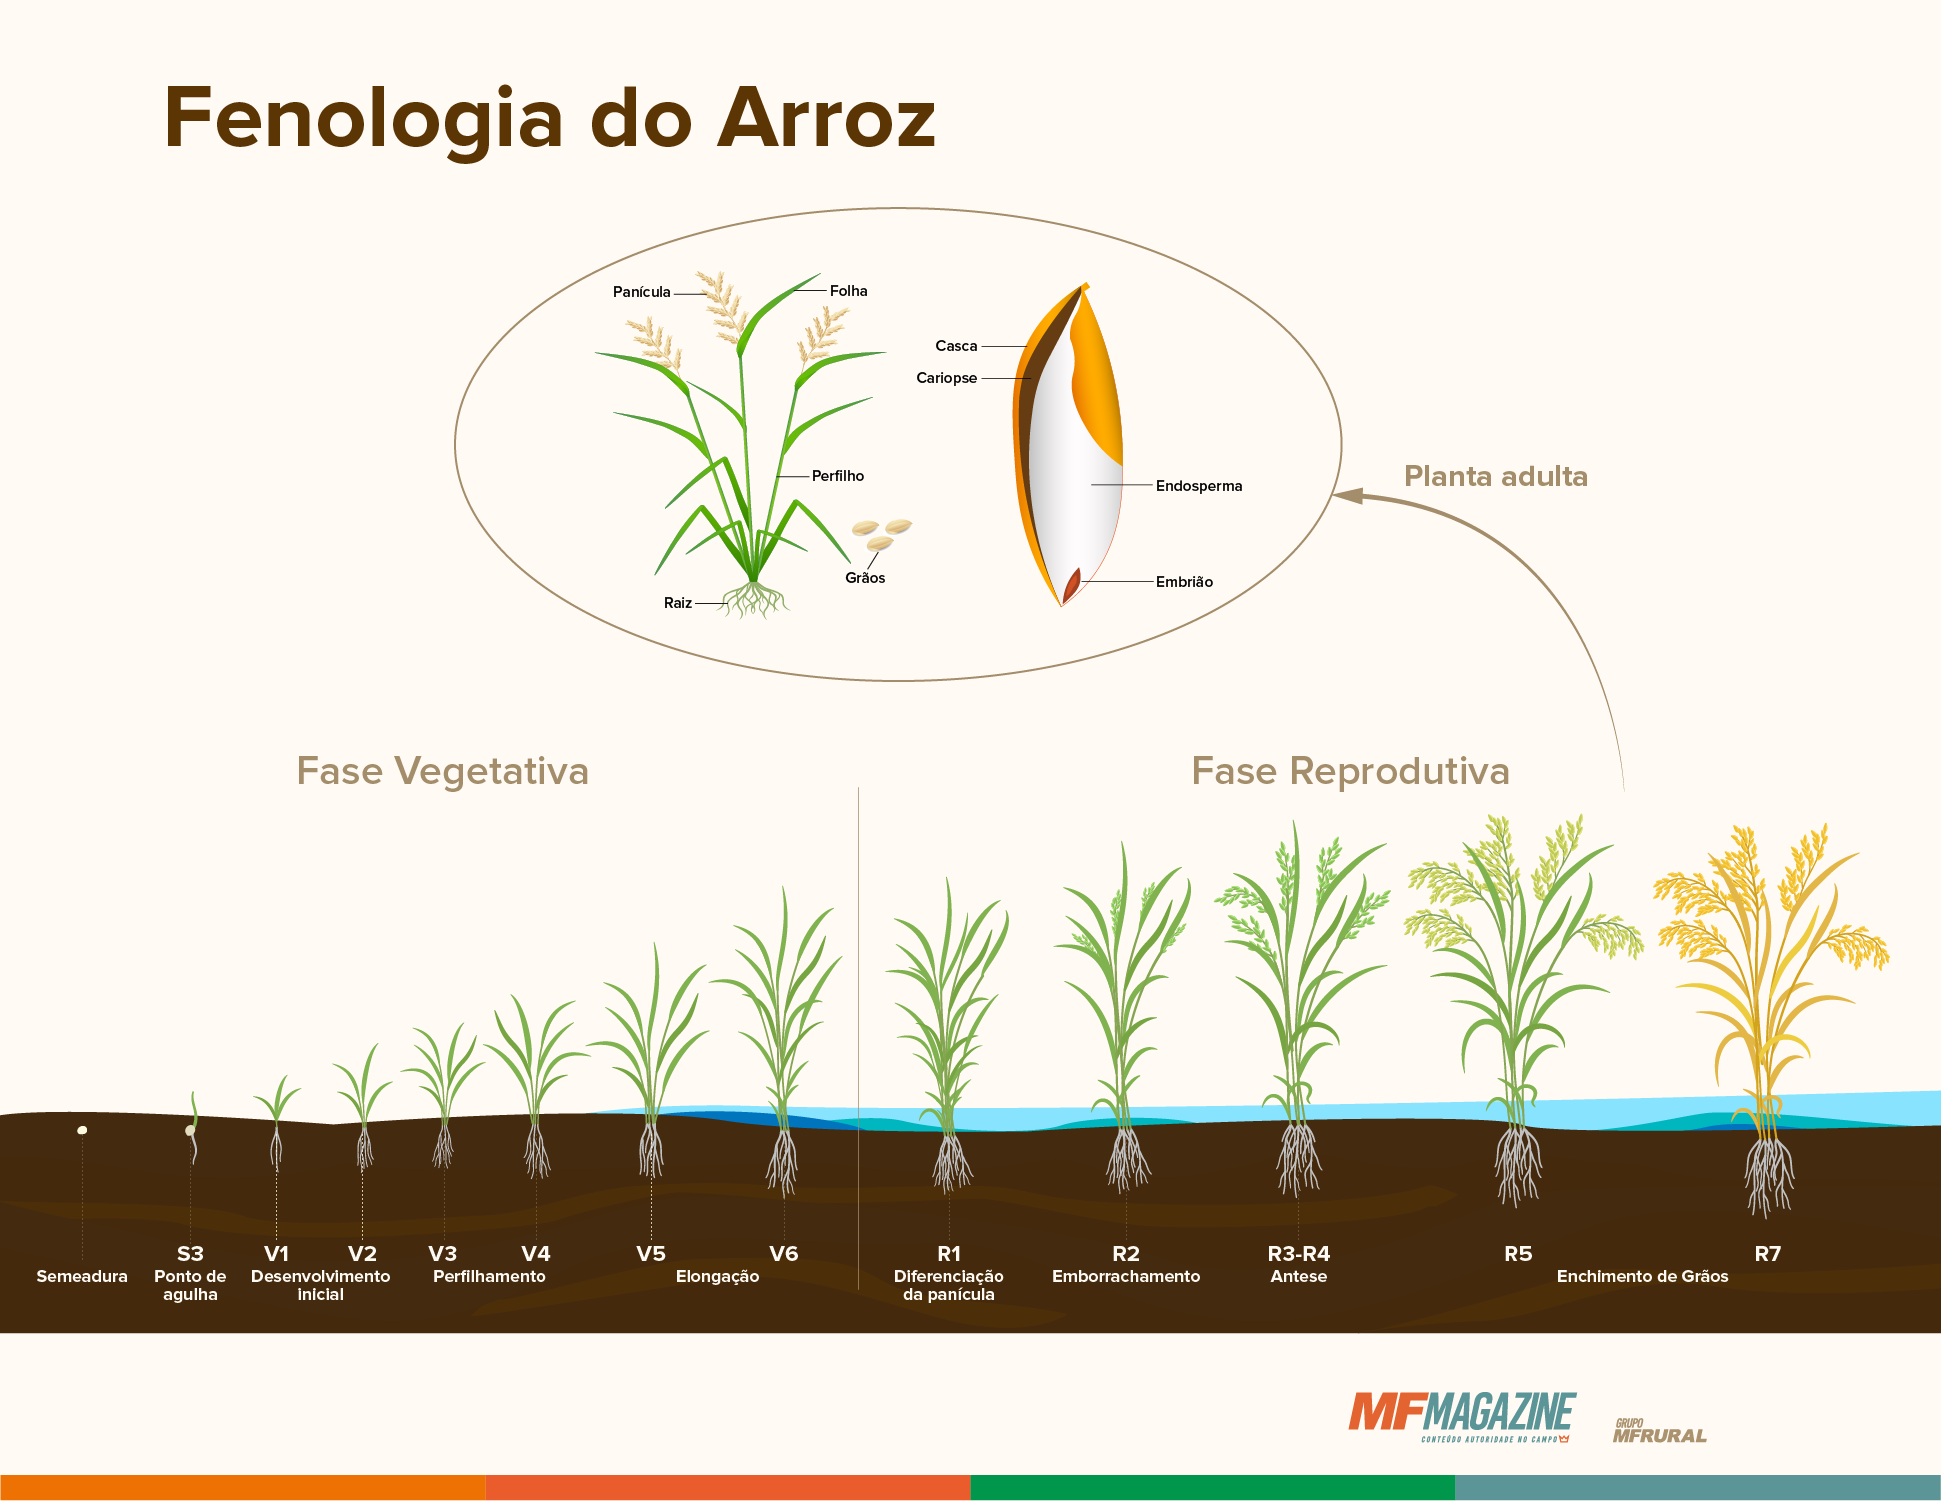 Fenologia do arroz, com as fases vegetativa e reprodutiva demonstradas